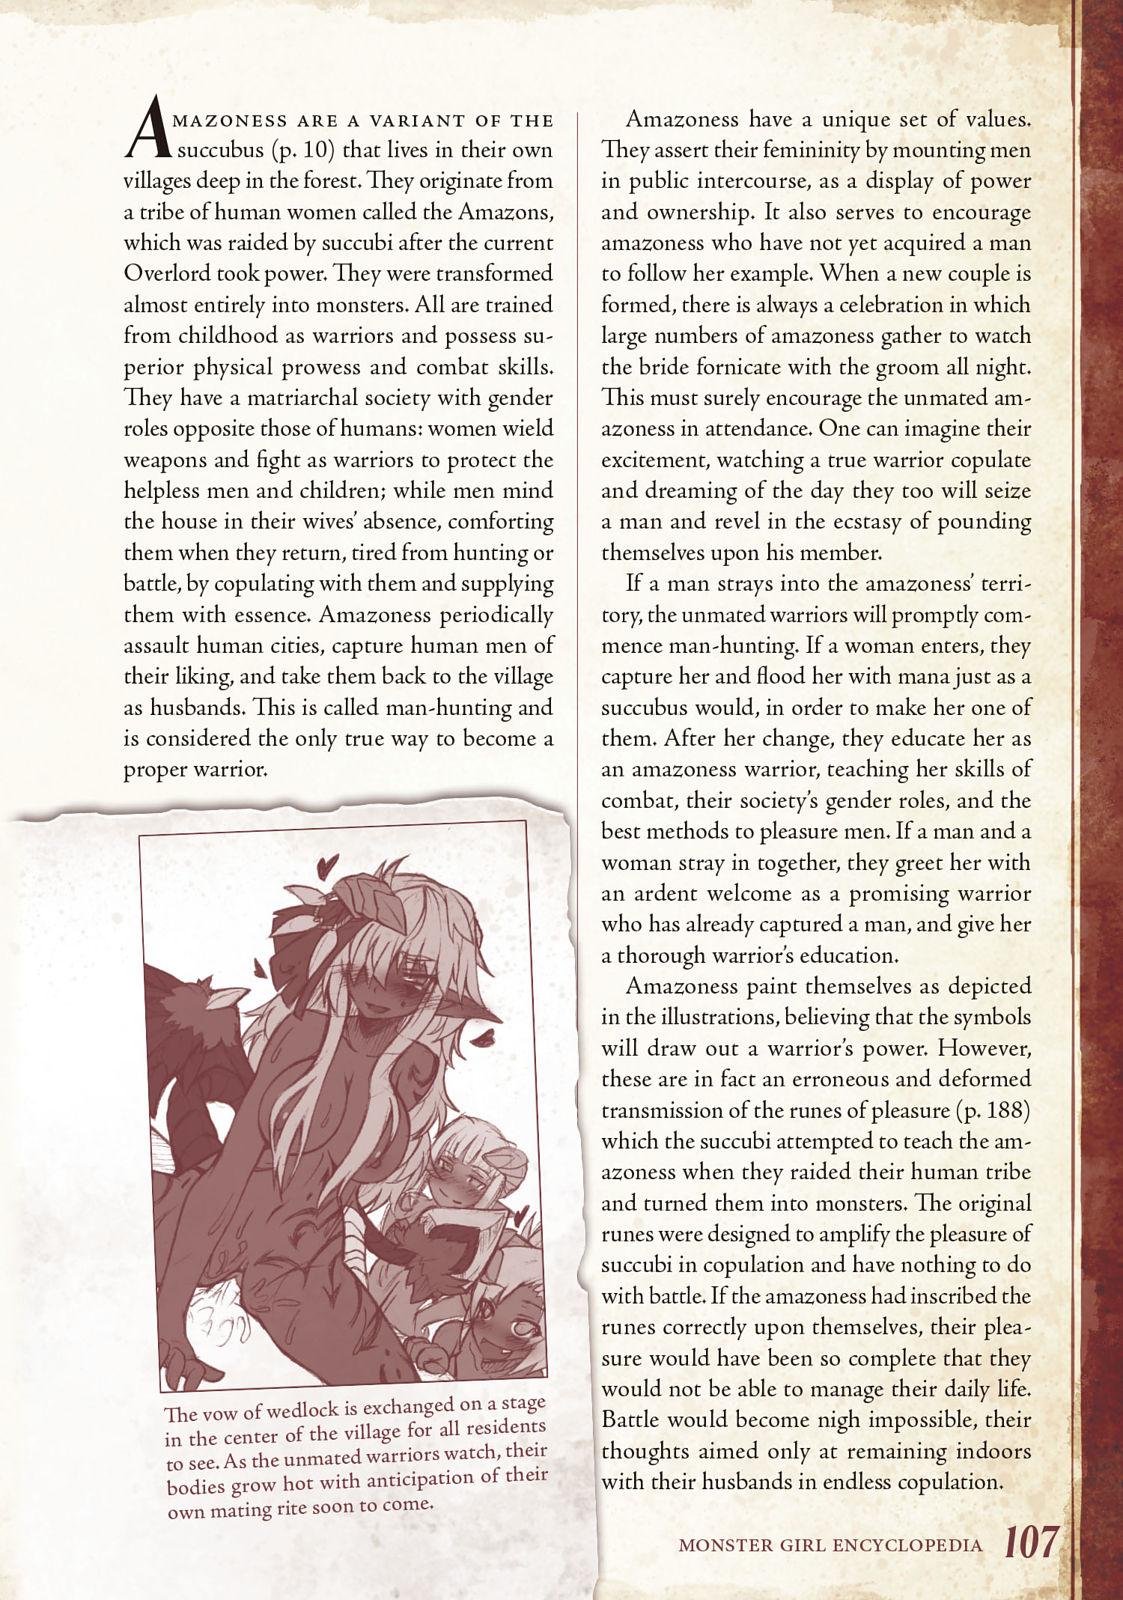 Monster Girl Encyclopedia Vol. 1 107